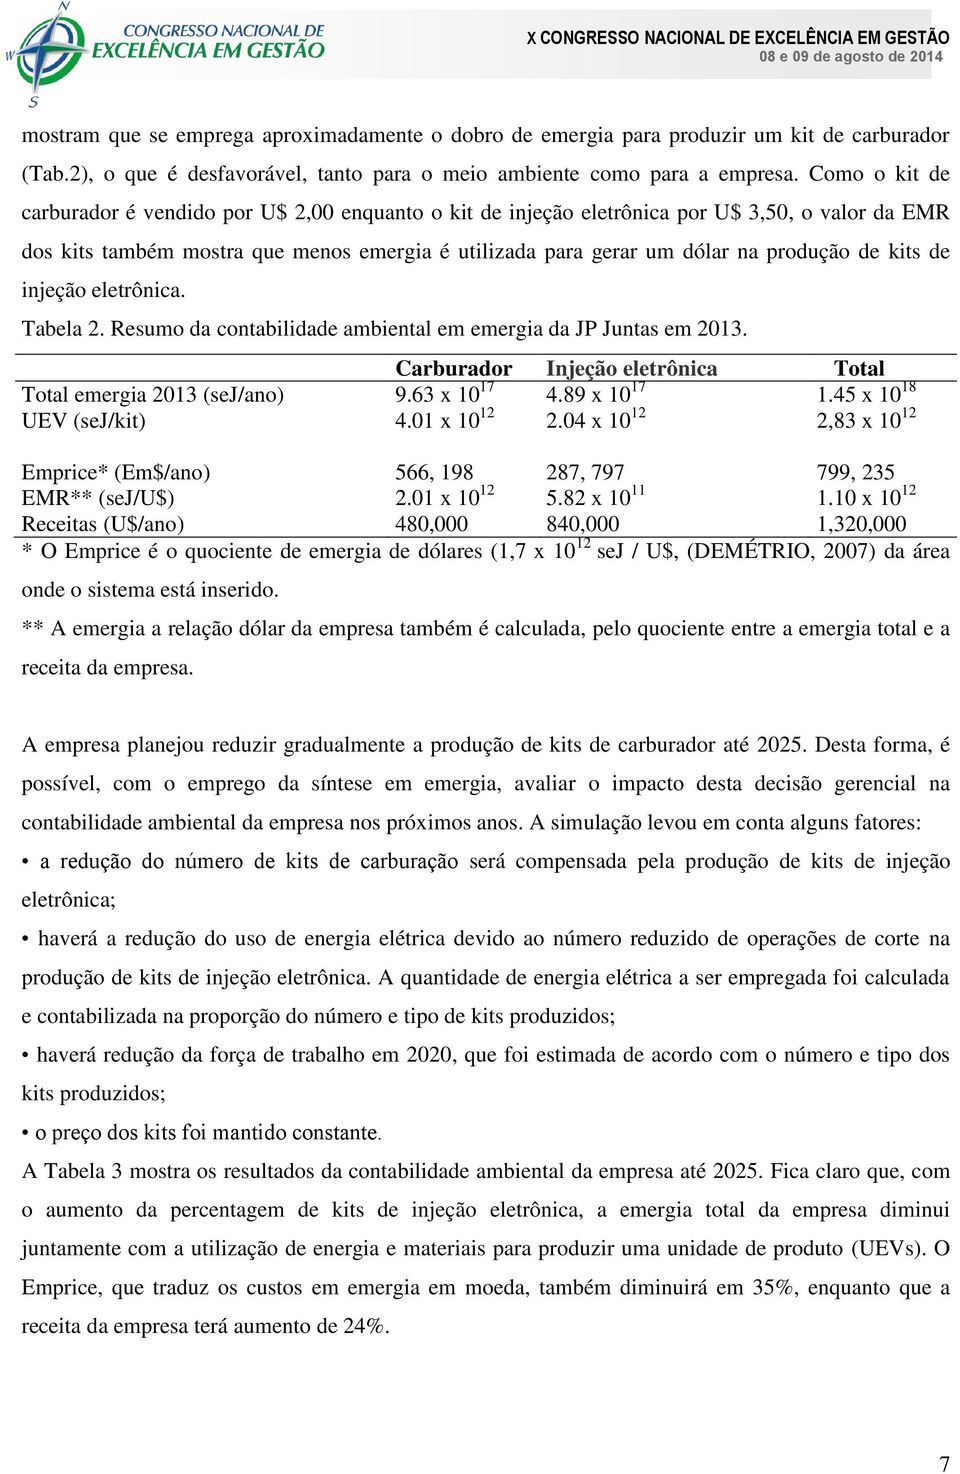 kits de injeção eletrônica. Tabela 2. Resumo da contabilidade ambiental em emergia da JP Juntas em 2013. Carburador Injeção eletrônica Total Total emergia 2013 (sej/ano) 9.63 x 10 17 4.89 x 10 17 1.